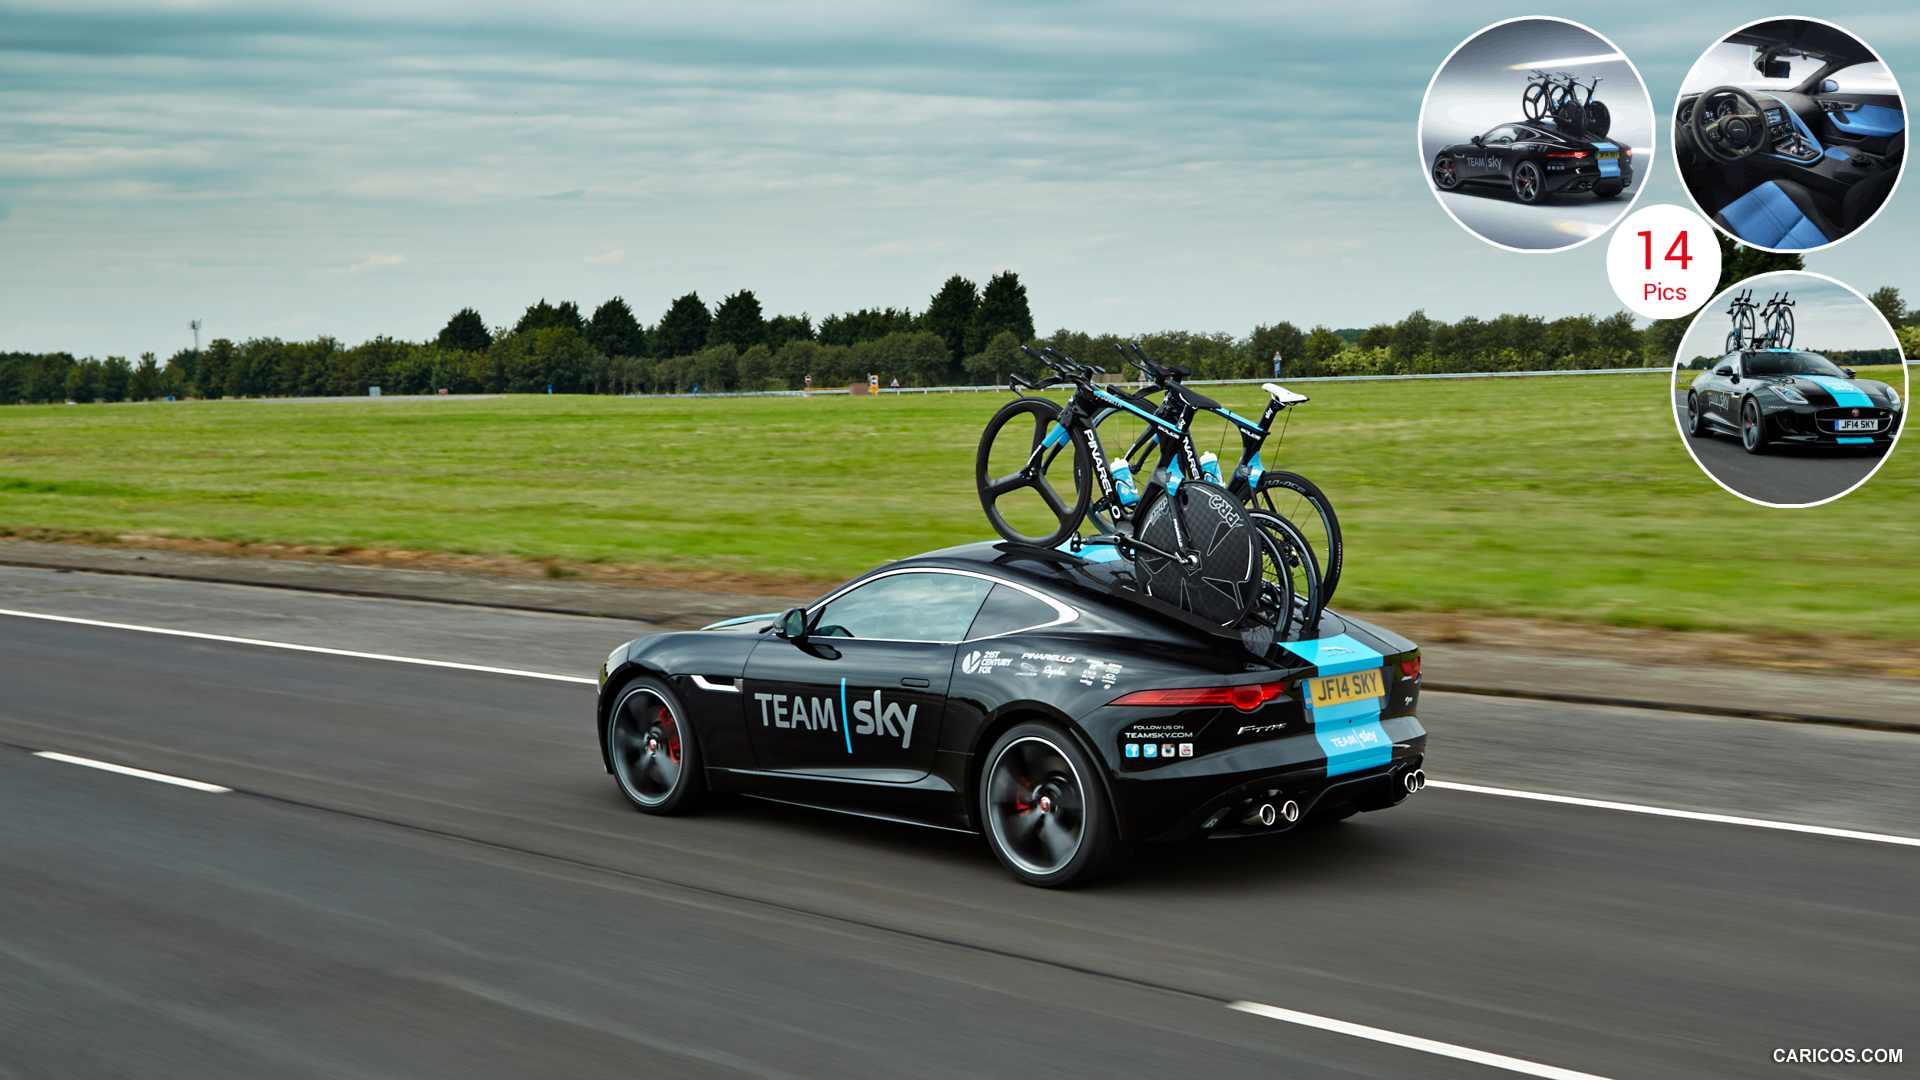 2014 Jaguar F Type Team Sky Tour de France Concept - Rear HD